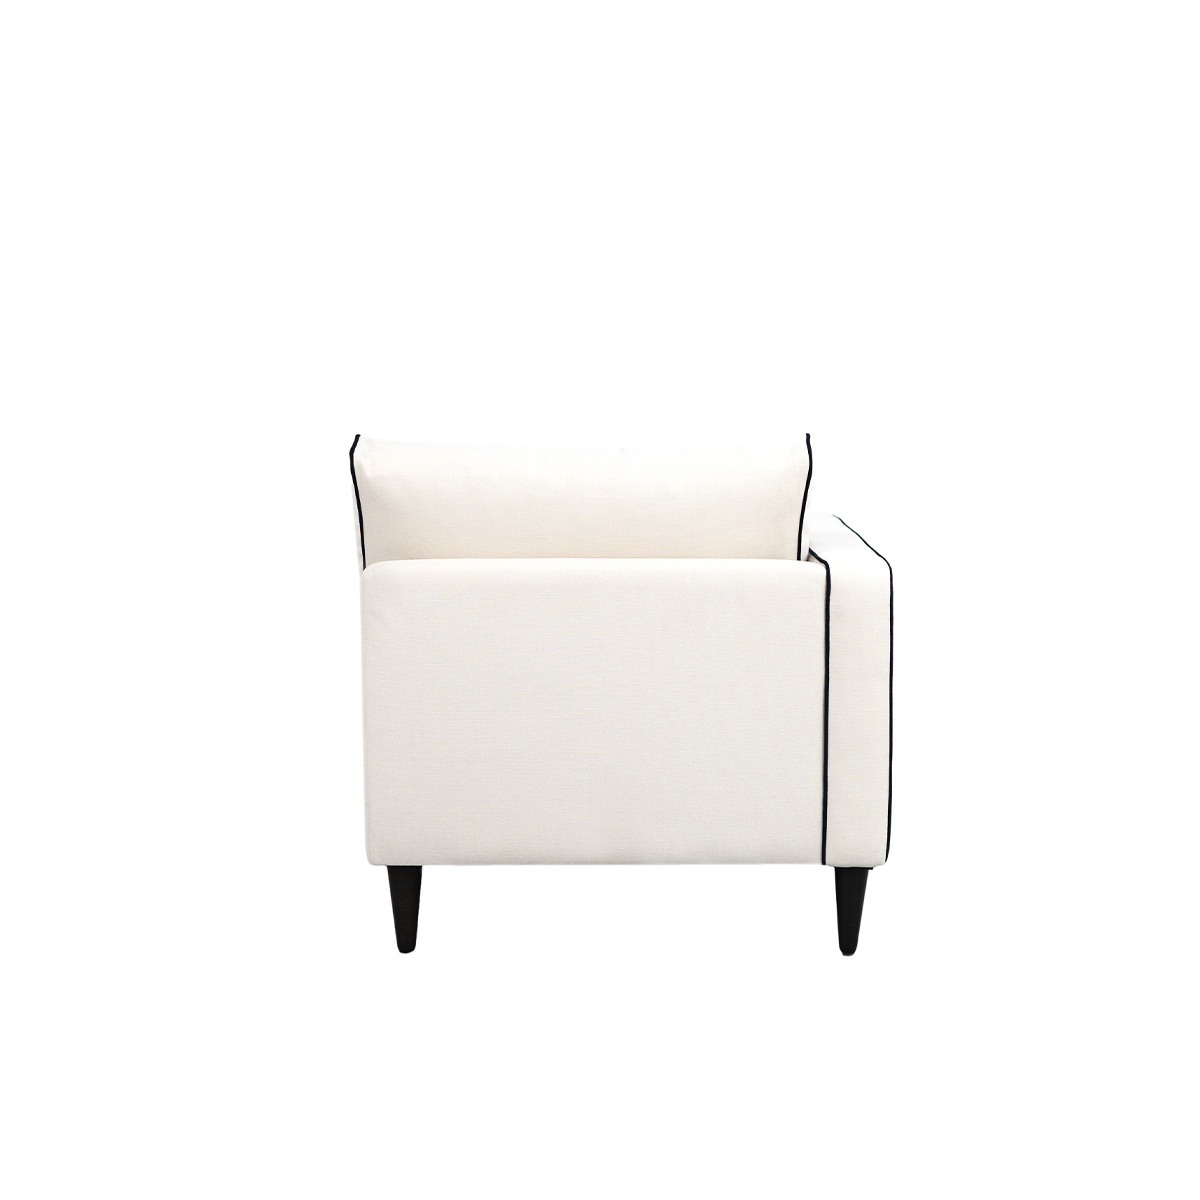 Noa sofa - Left armrest, Different Sizes - Cotton - image 6